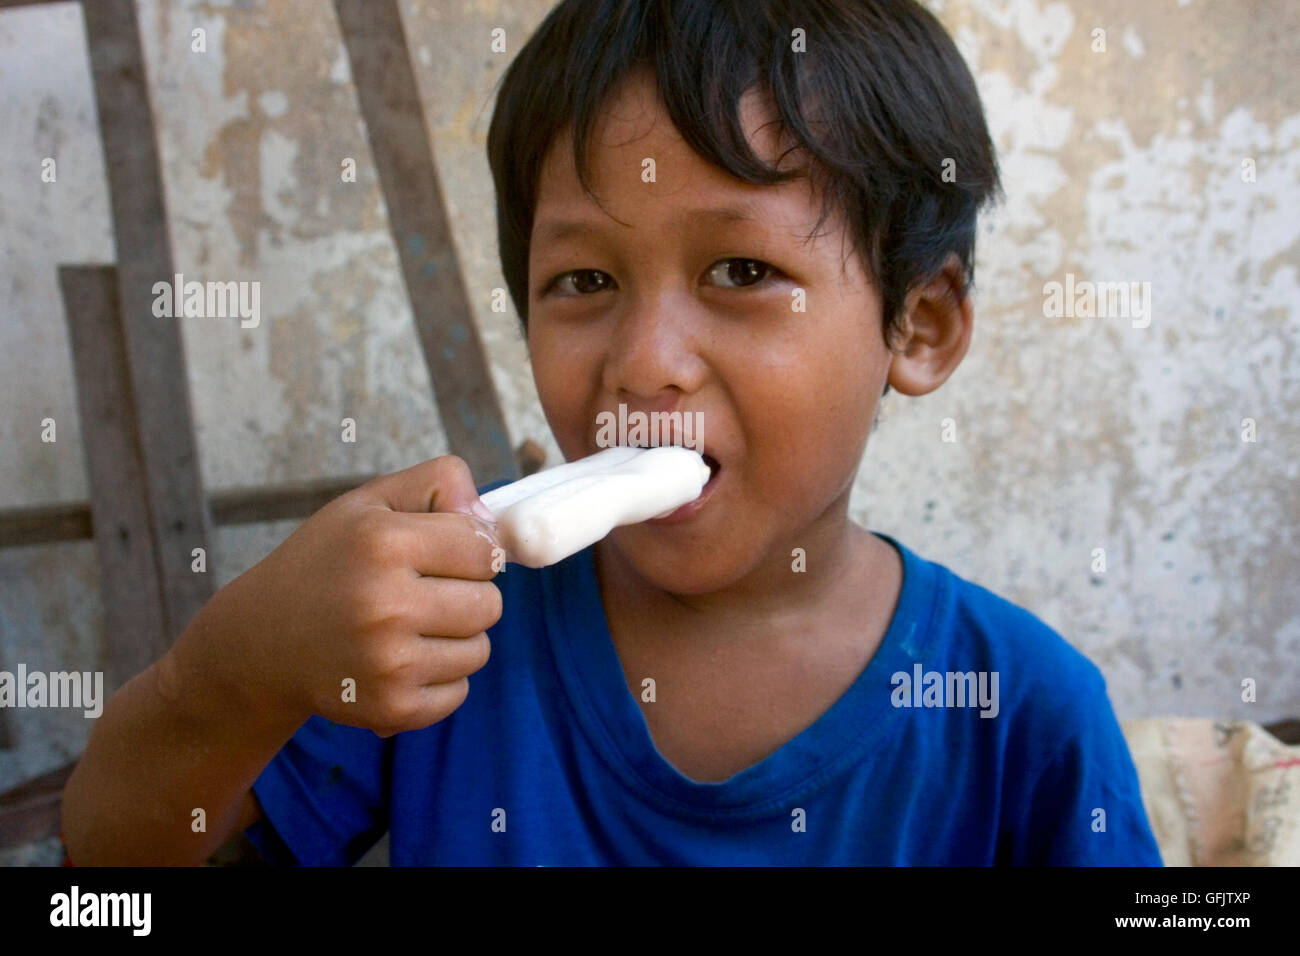 Ein kleiner Junge isst eine Eis-Bar in einem Slum in Kampong Cham, Kambodscha. Stockfoto